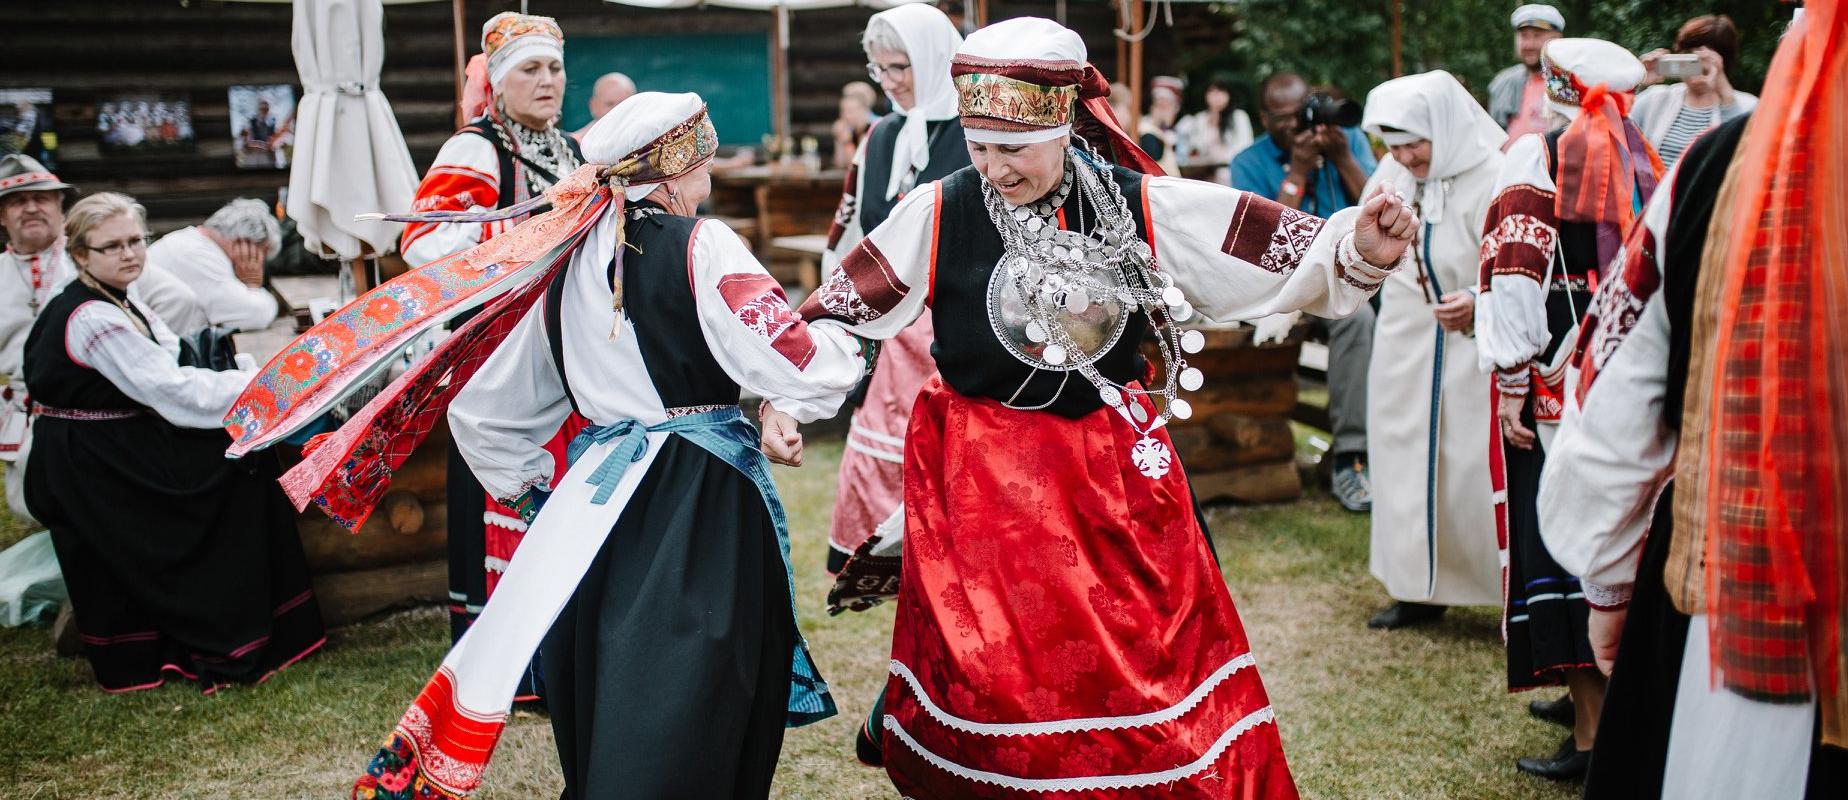 Seto Folk on festivaali, jossa musiikin ja luonnon yhteistoimesta syntyy elämyksiä ja inspiraatiota. Se on festivaali, joka tuo yhteen matkailusta ja 